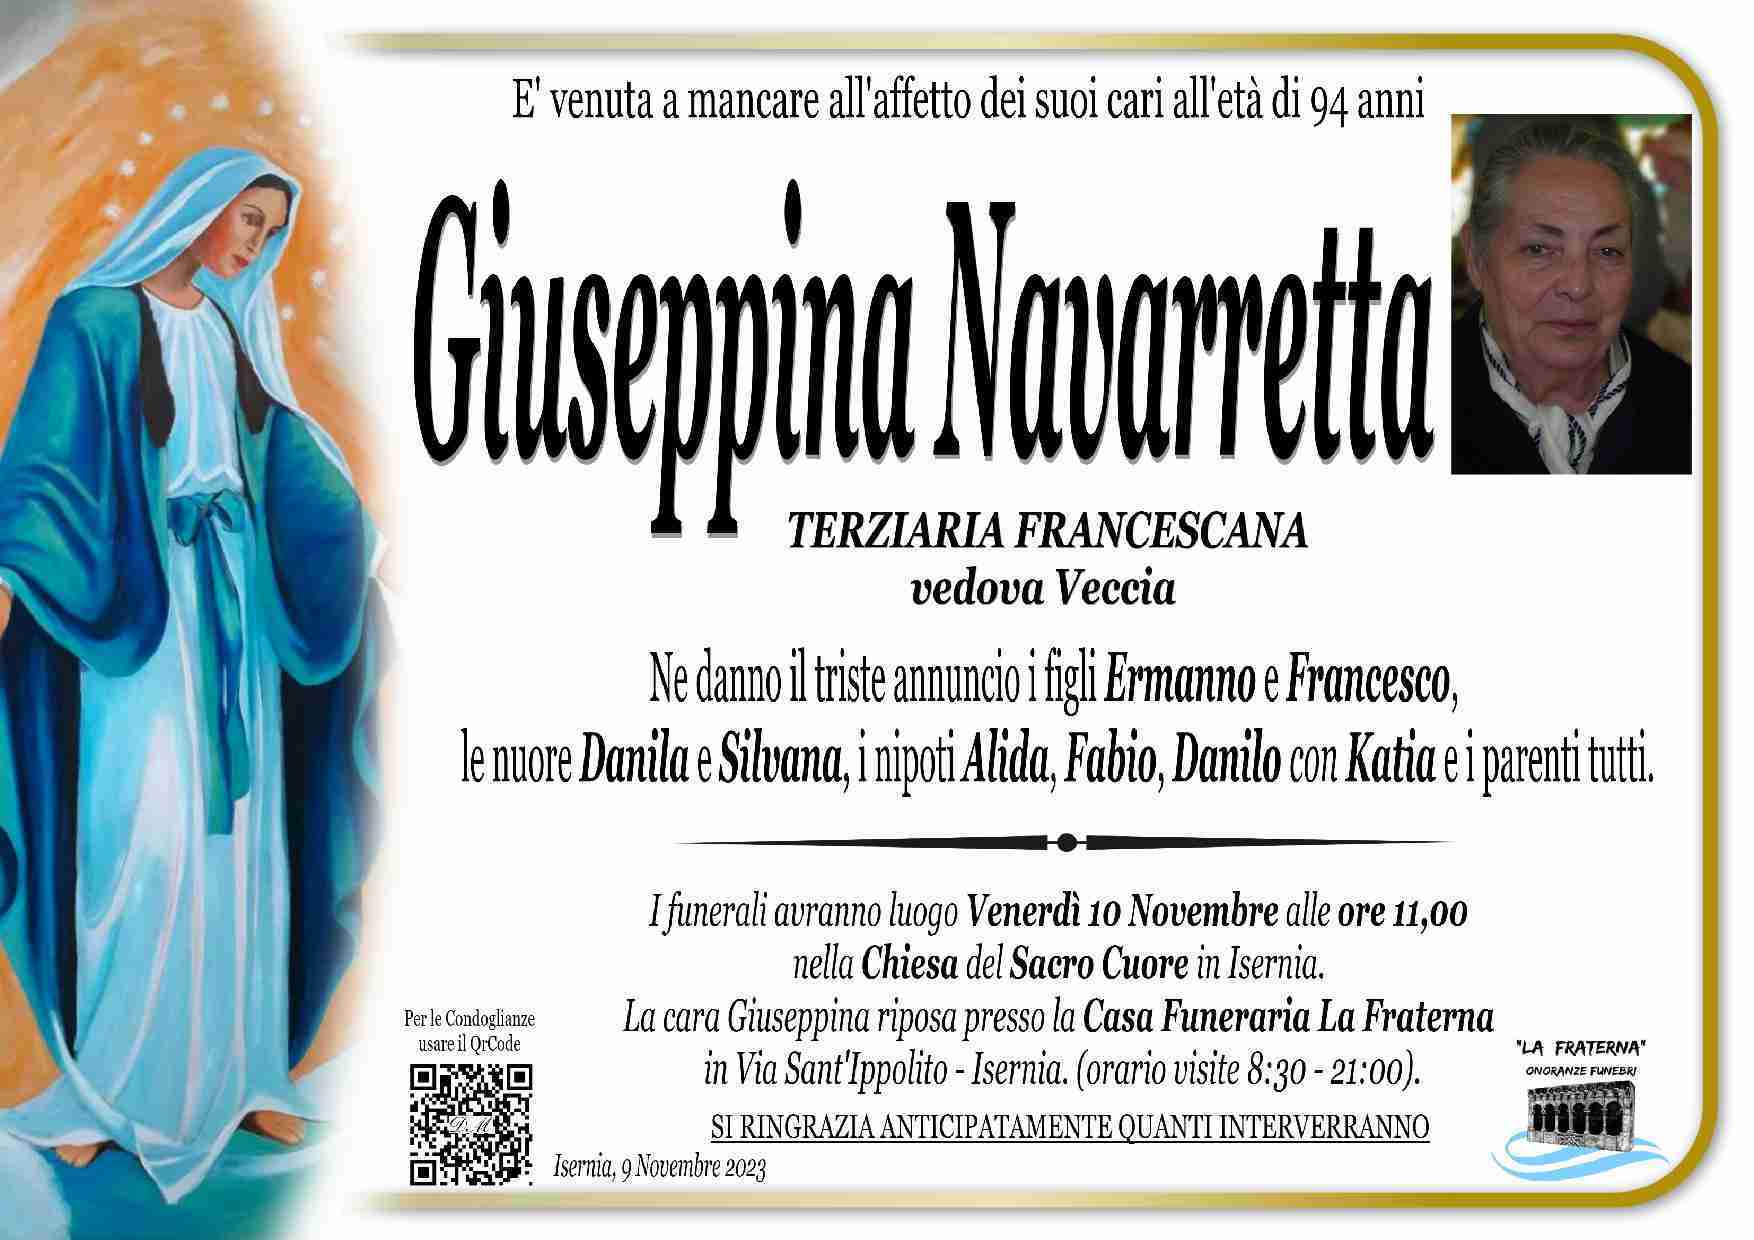 Giuseppina Navarretta